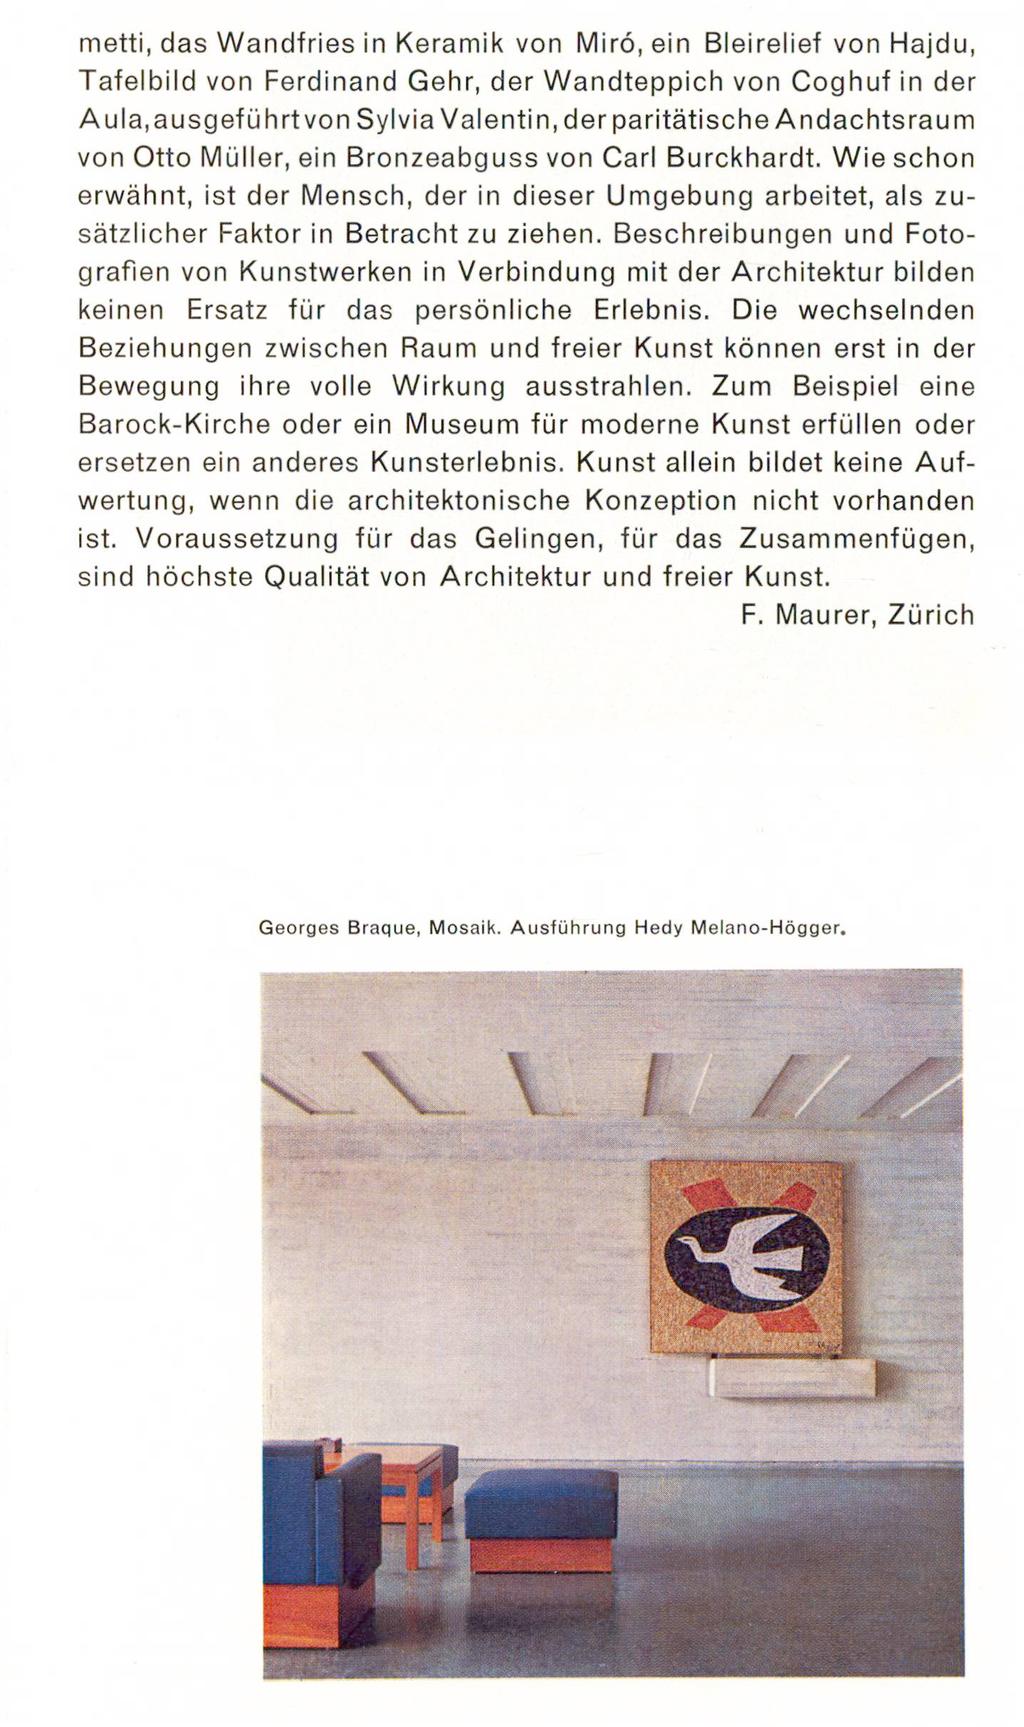 metti, das Wandfries in Keramik von Miro, ein Bleirelief von Hajdu, Tafelbild von Ferdinand Gehr, der Wandteppich von Coghuf in der Aula,ausgeführt von Sylvia Valentin, der paritätische Andachtsraum